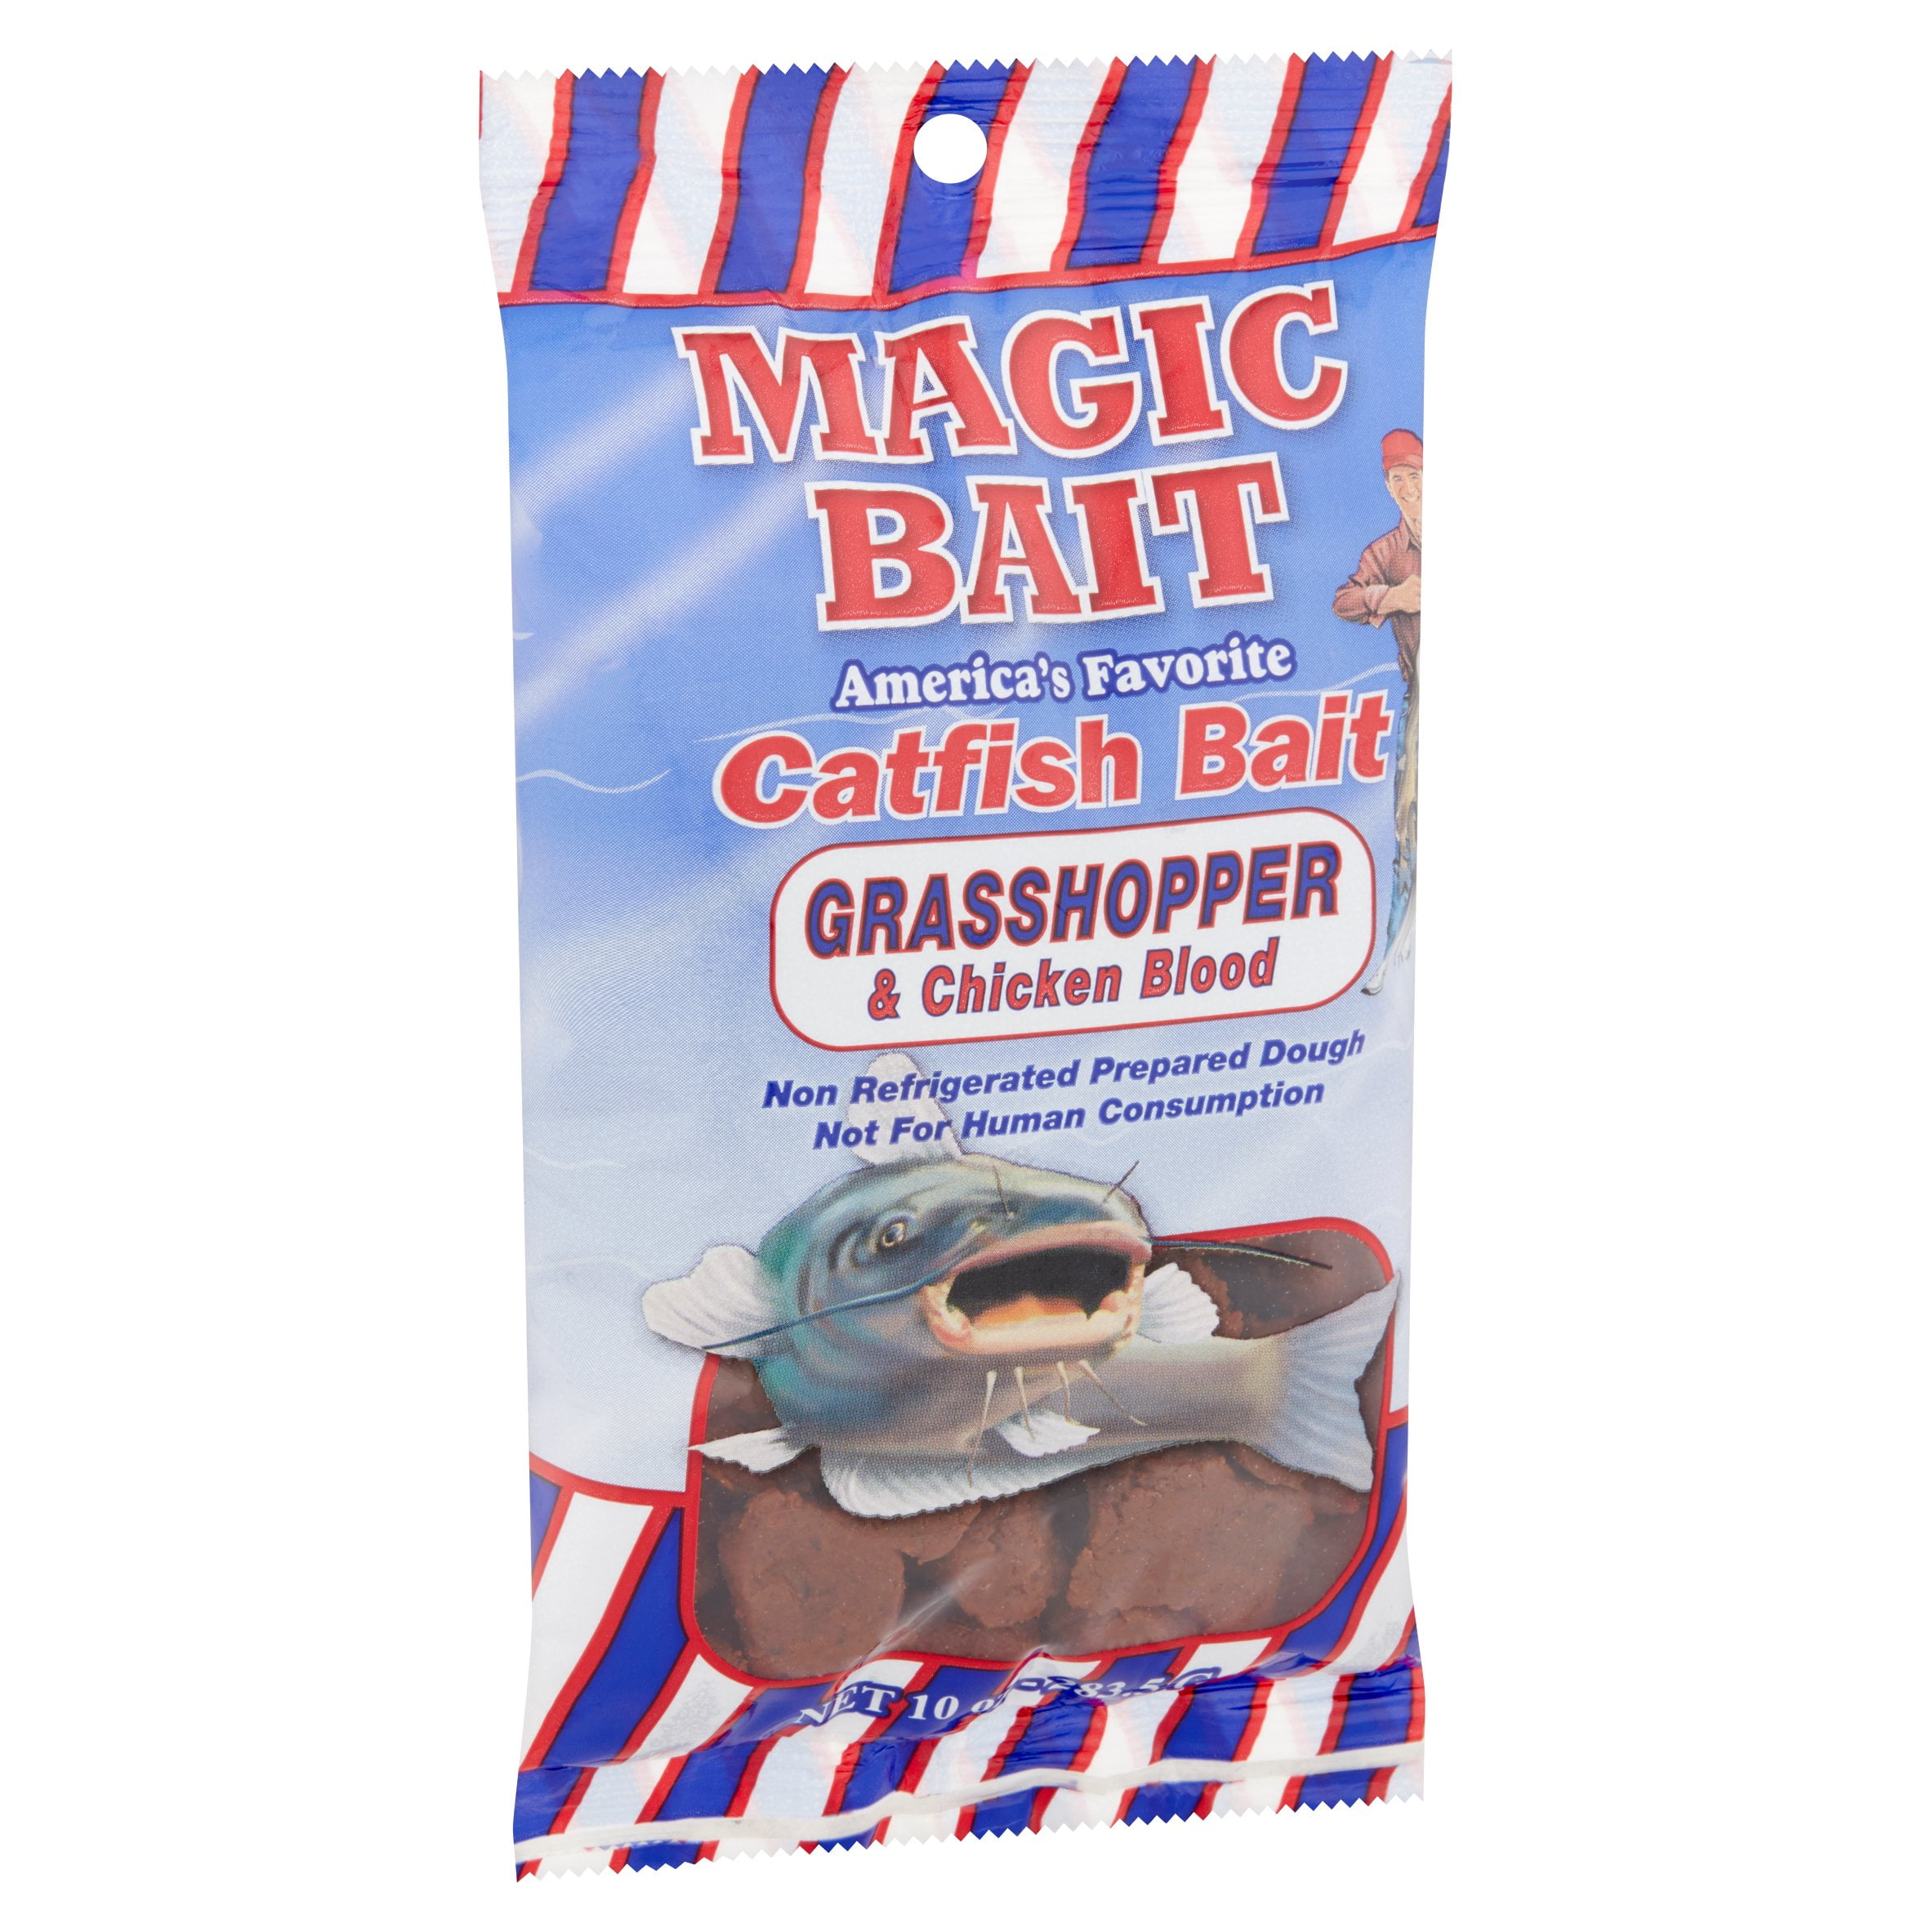 Magic Bait Red Trout Bait Eggs - MP3140